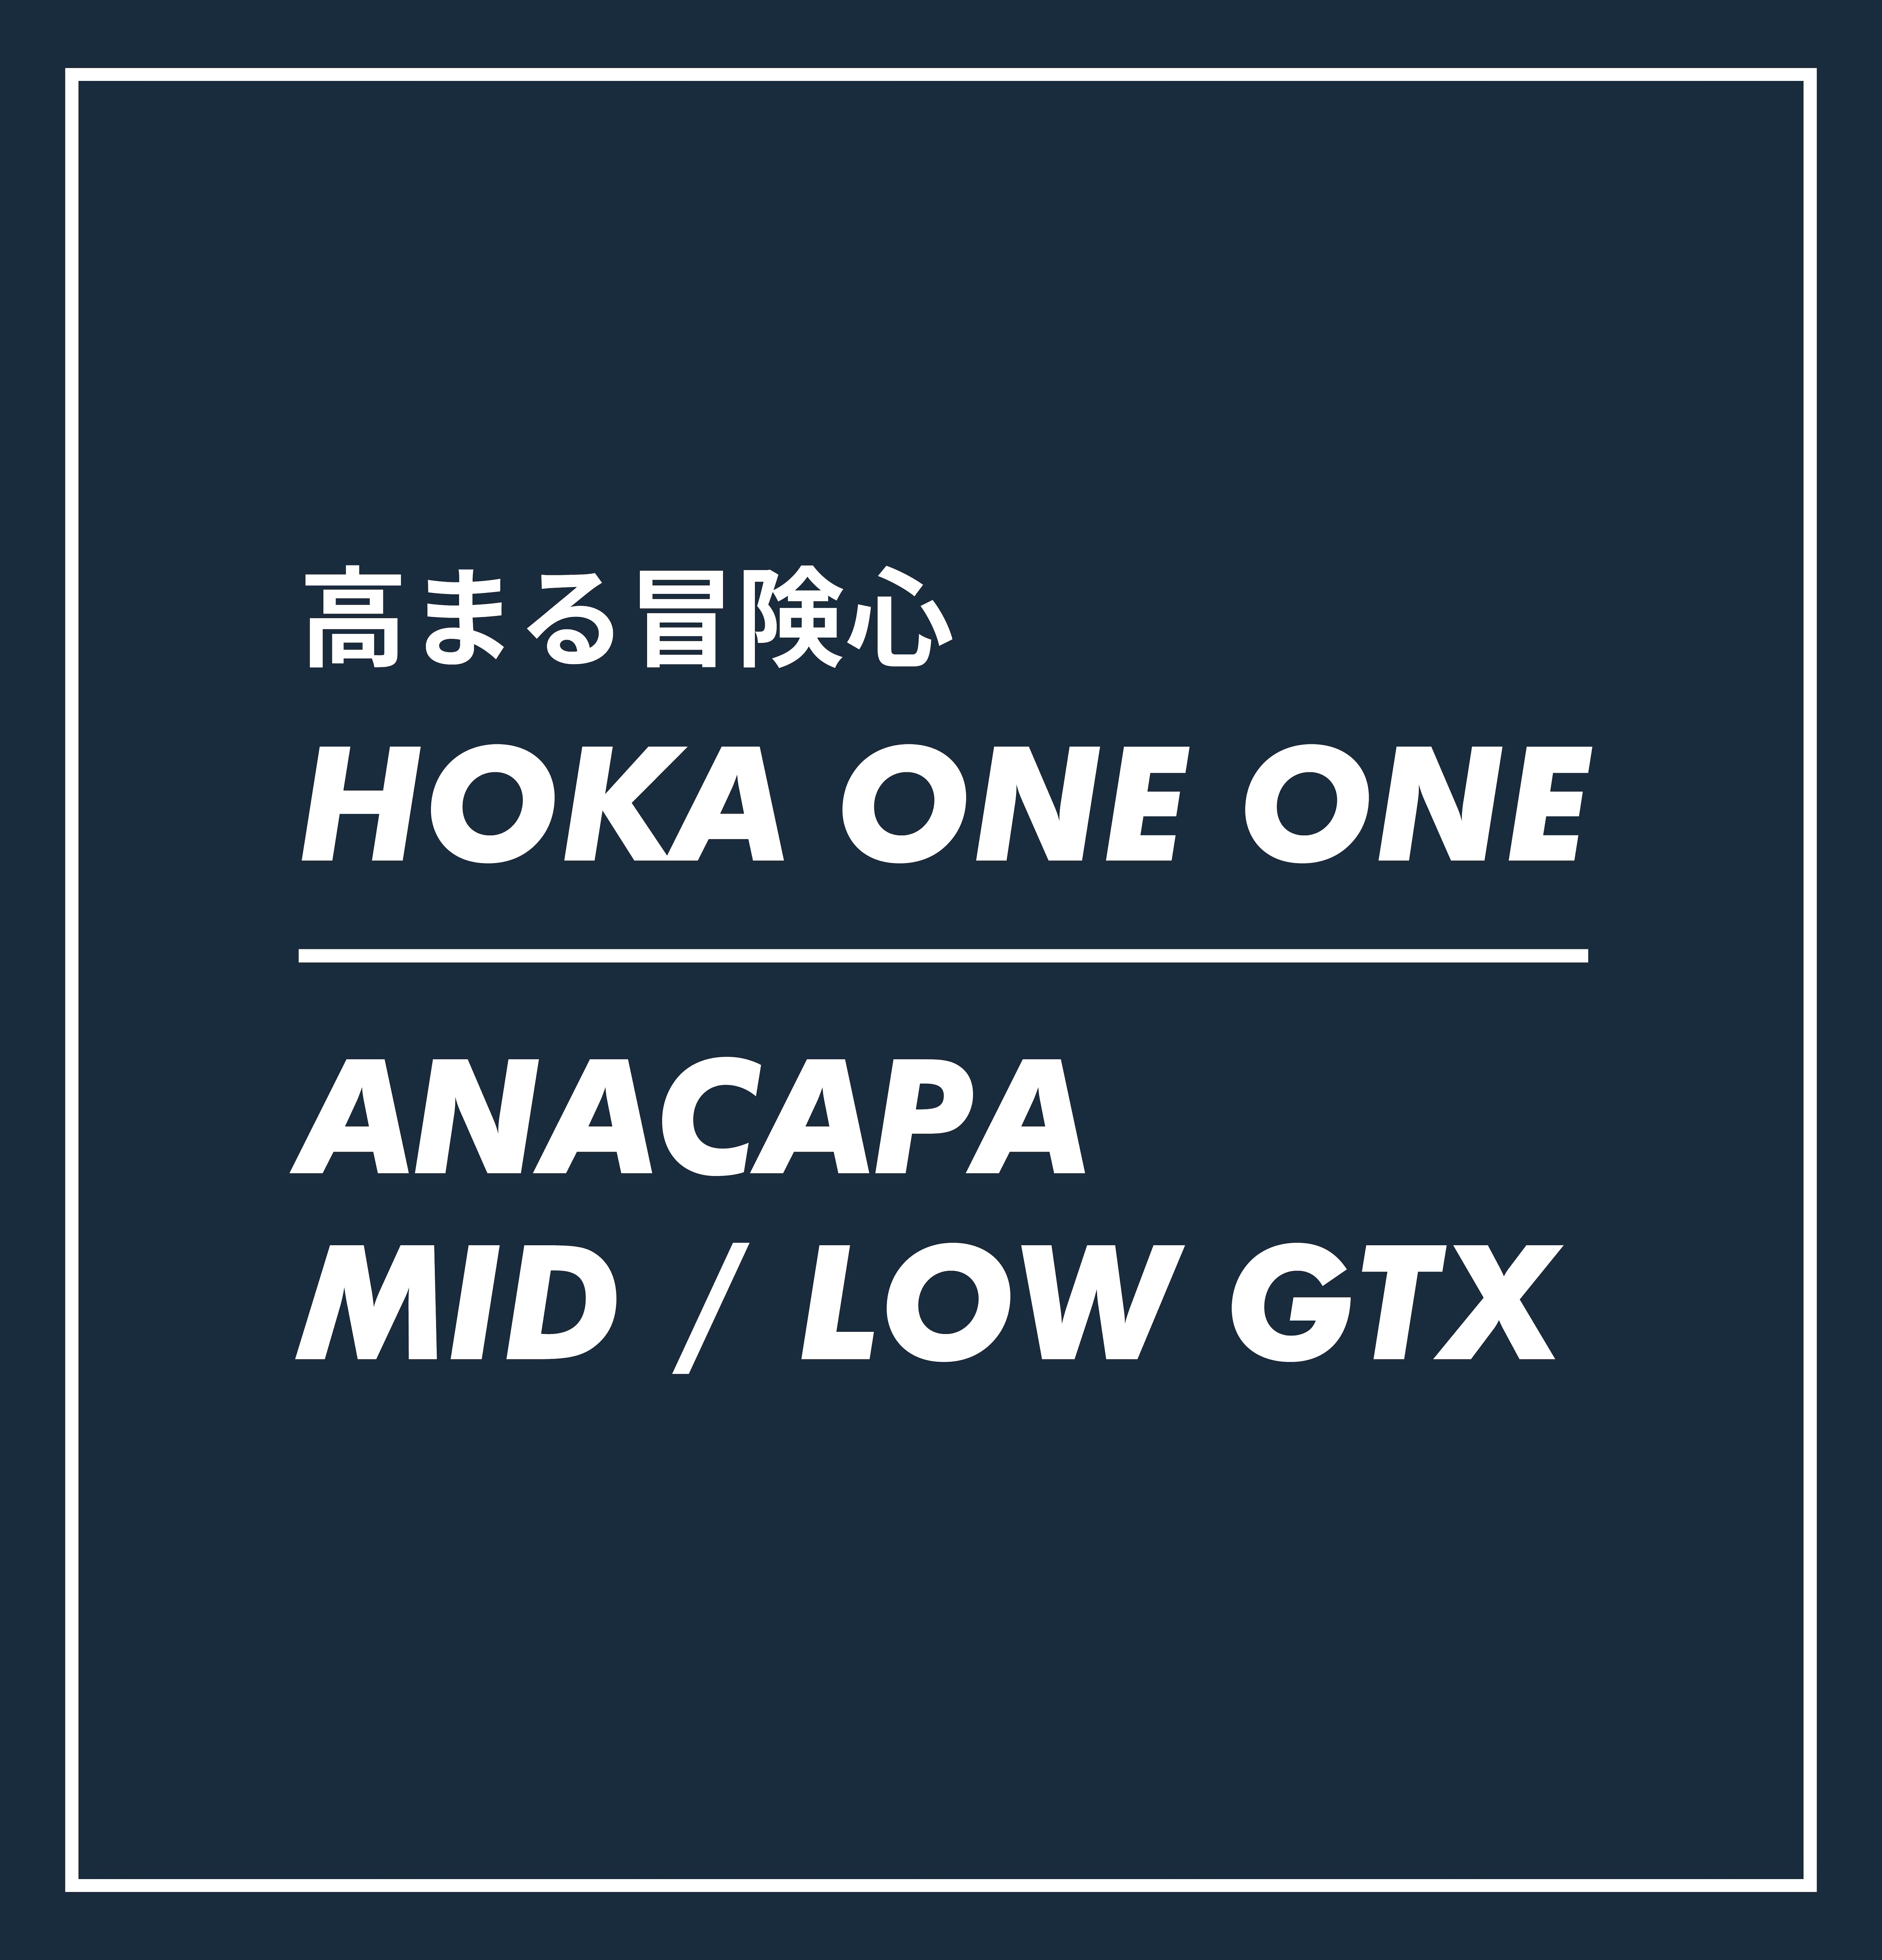 HOKA ANACAPA MID / LOW GTX